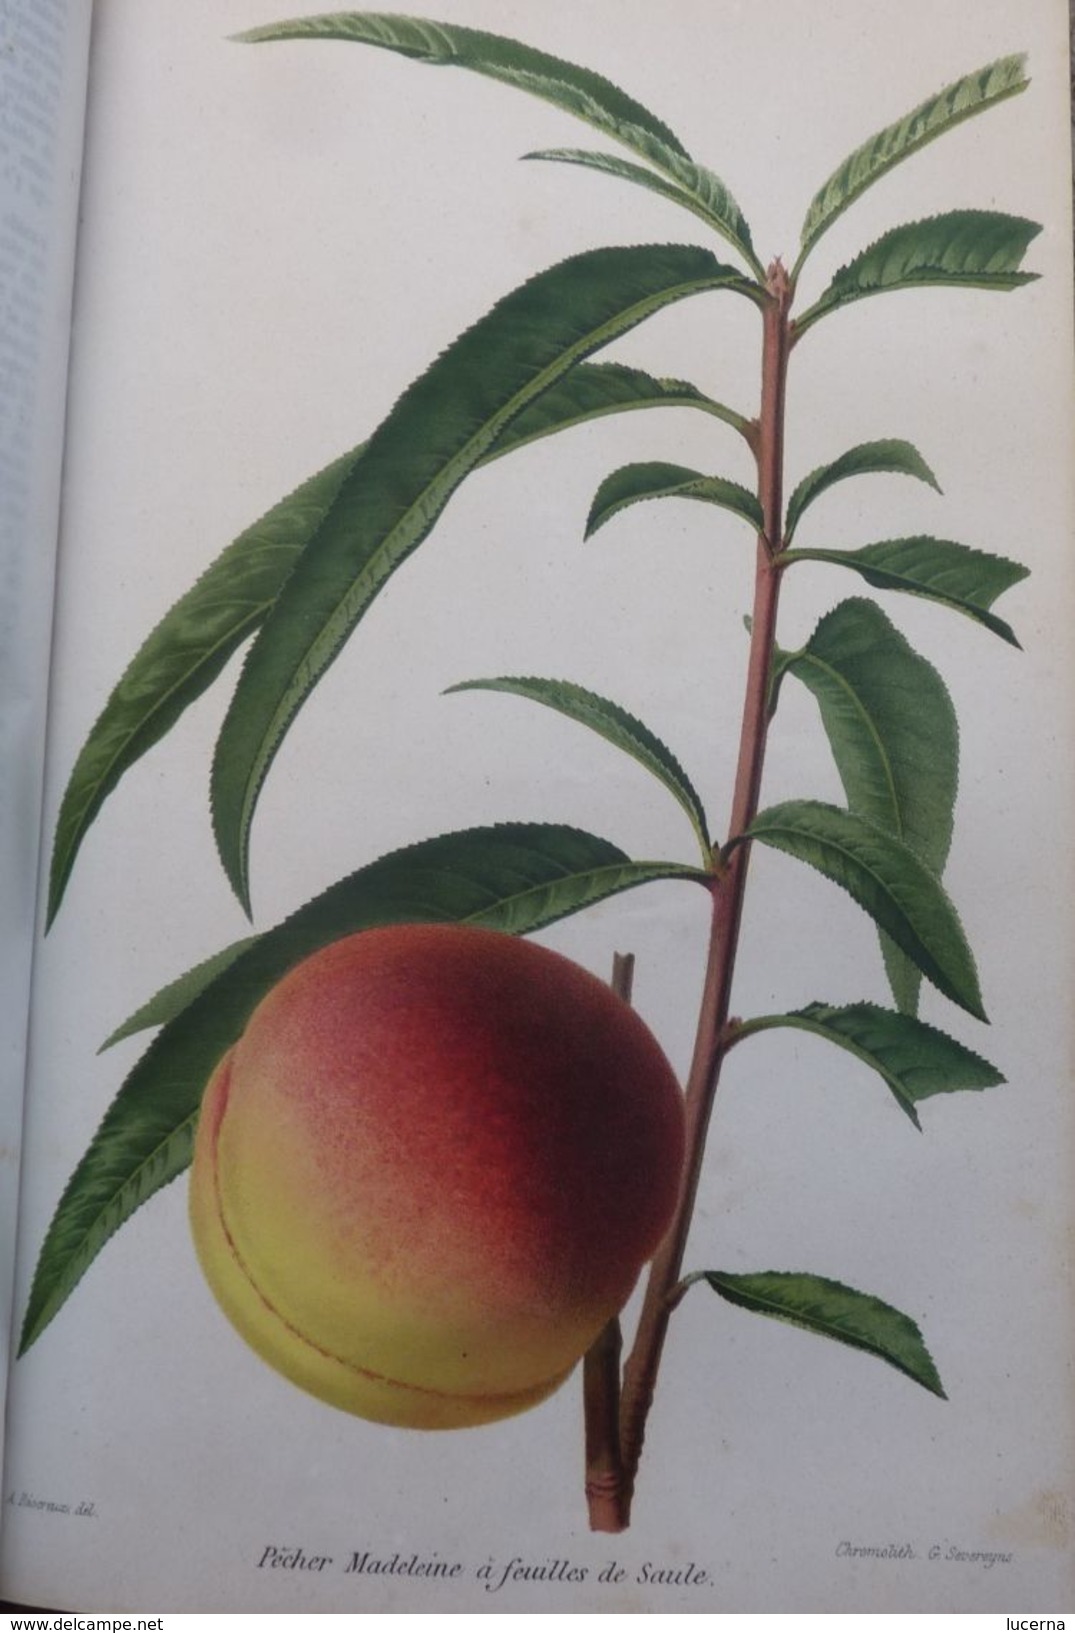 REVUE HORTICOLE 1870 ET 1871 journal d'horticulture pratique, fondé en 1829 par les auteurs du bon jardinier